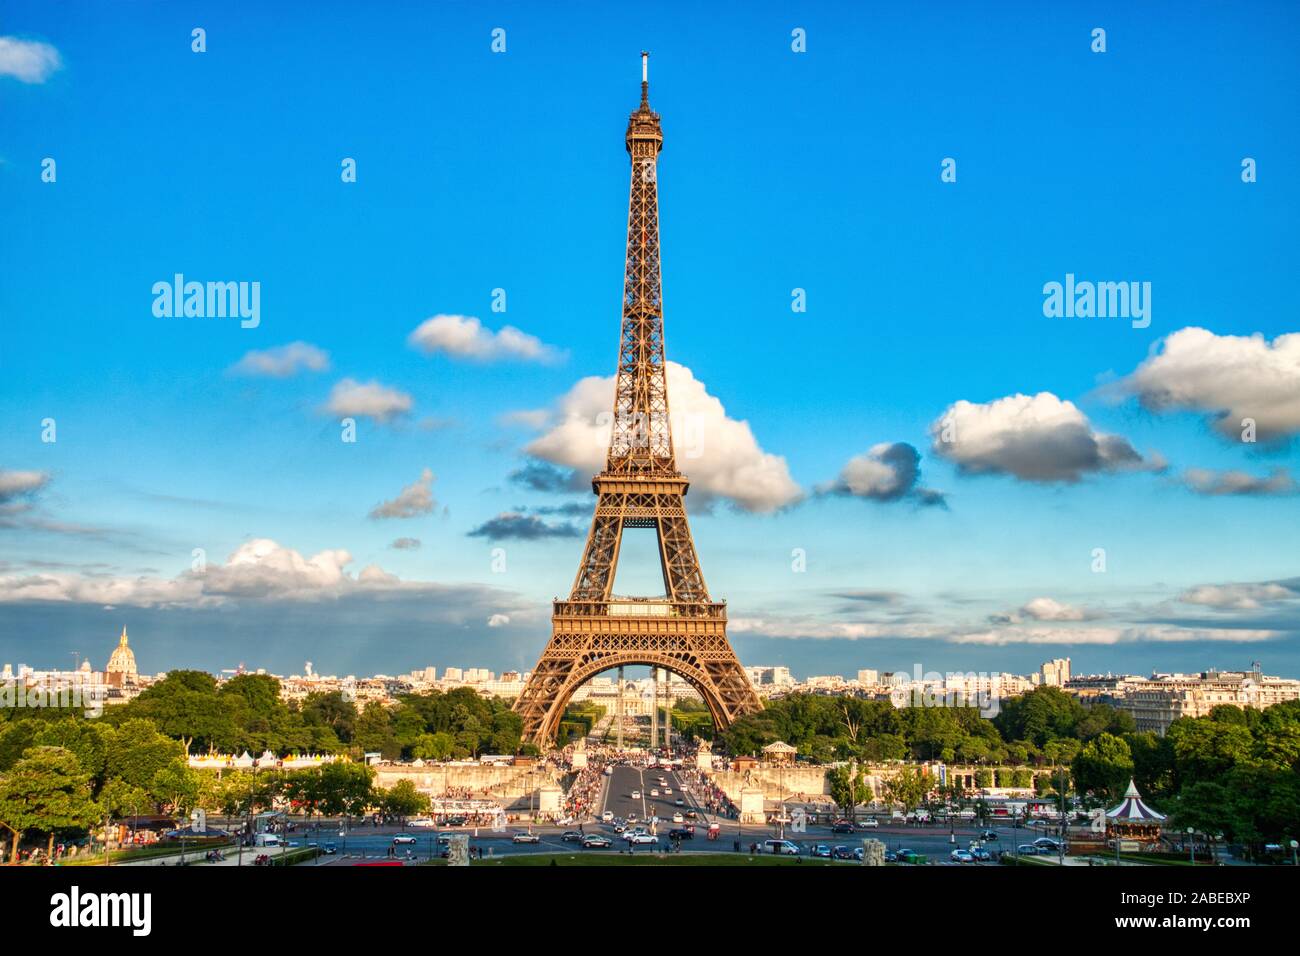 La Tour Eiffel au cours d'une journée ensoleillée, Paris, France Banque D'Images